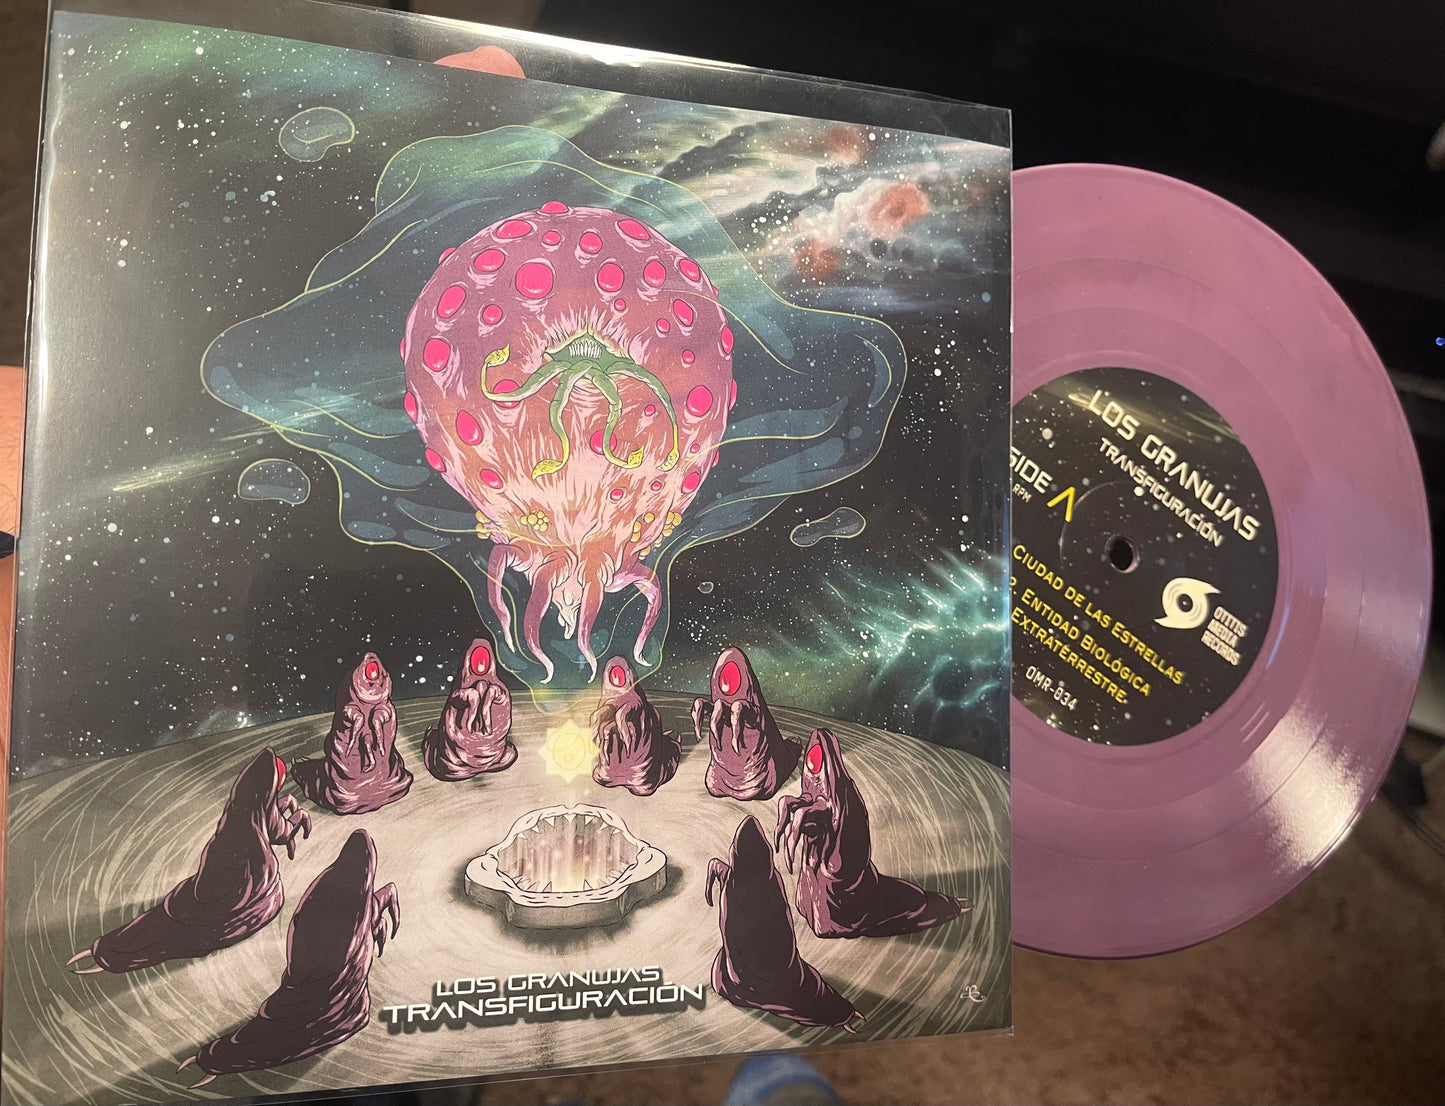 OMR-034 Los Granujas “Transfiguracion” 7 inch EP (Colored Vinyl)